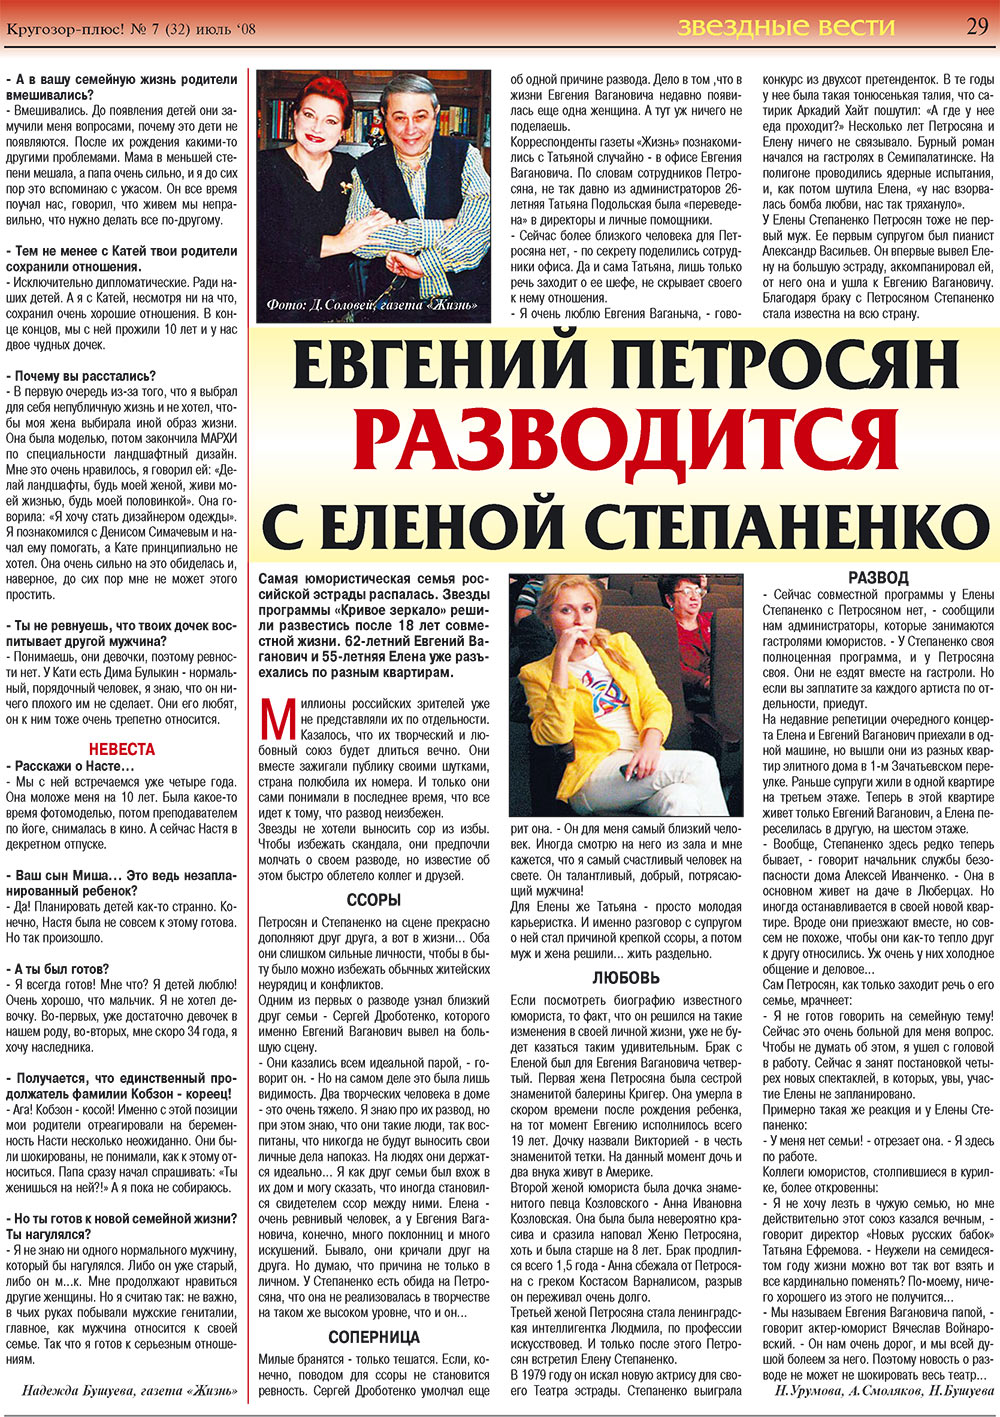 Кругозор плюс!, газета. 2008 №7 стр.29